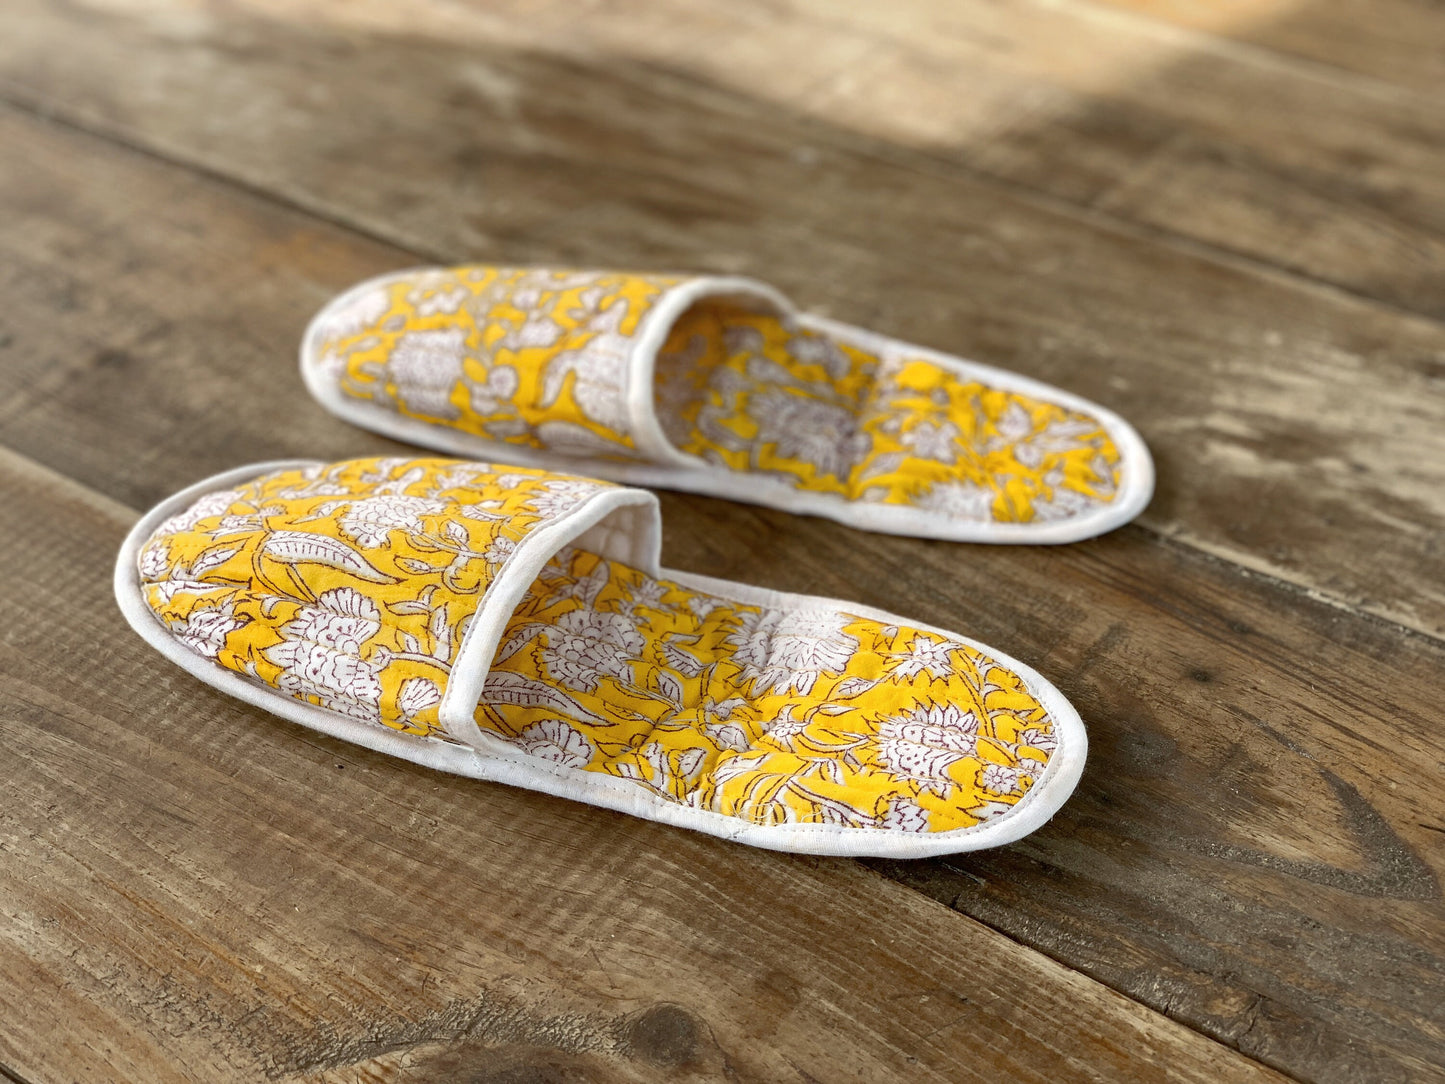 SET regalo · Camisón manga larga & zapatillas a juego · Algodón puro estampado block print artesanal en India · Amarillo estampado